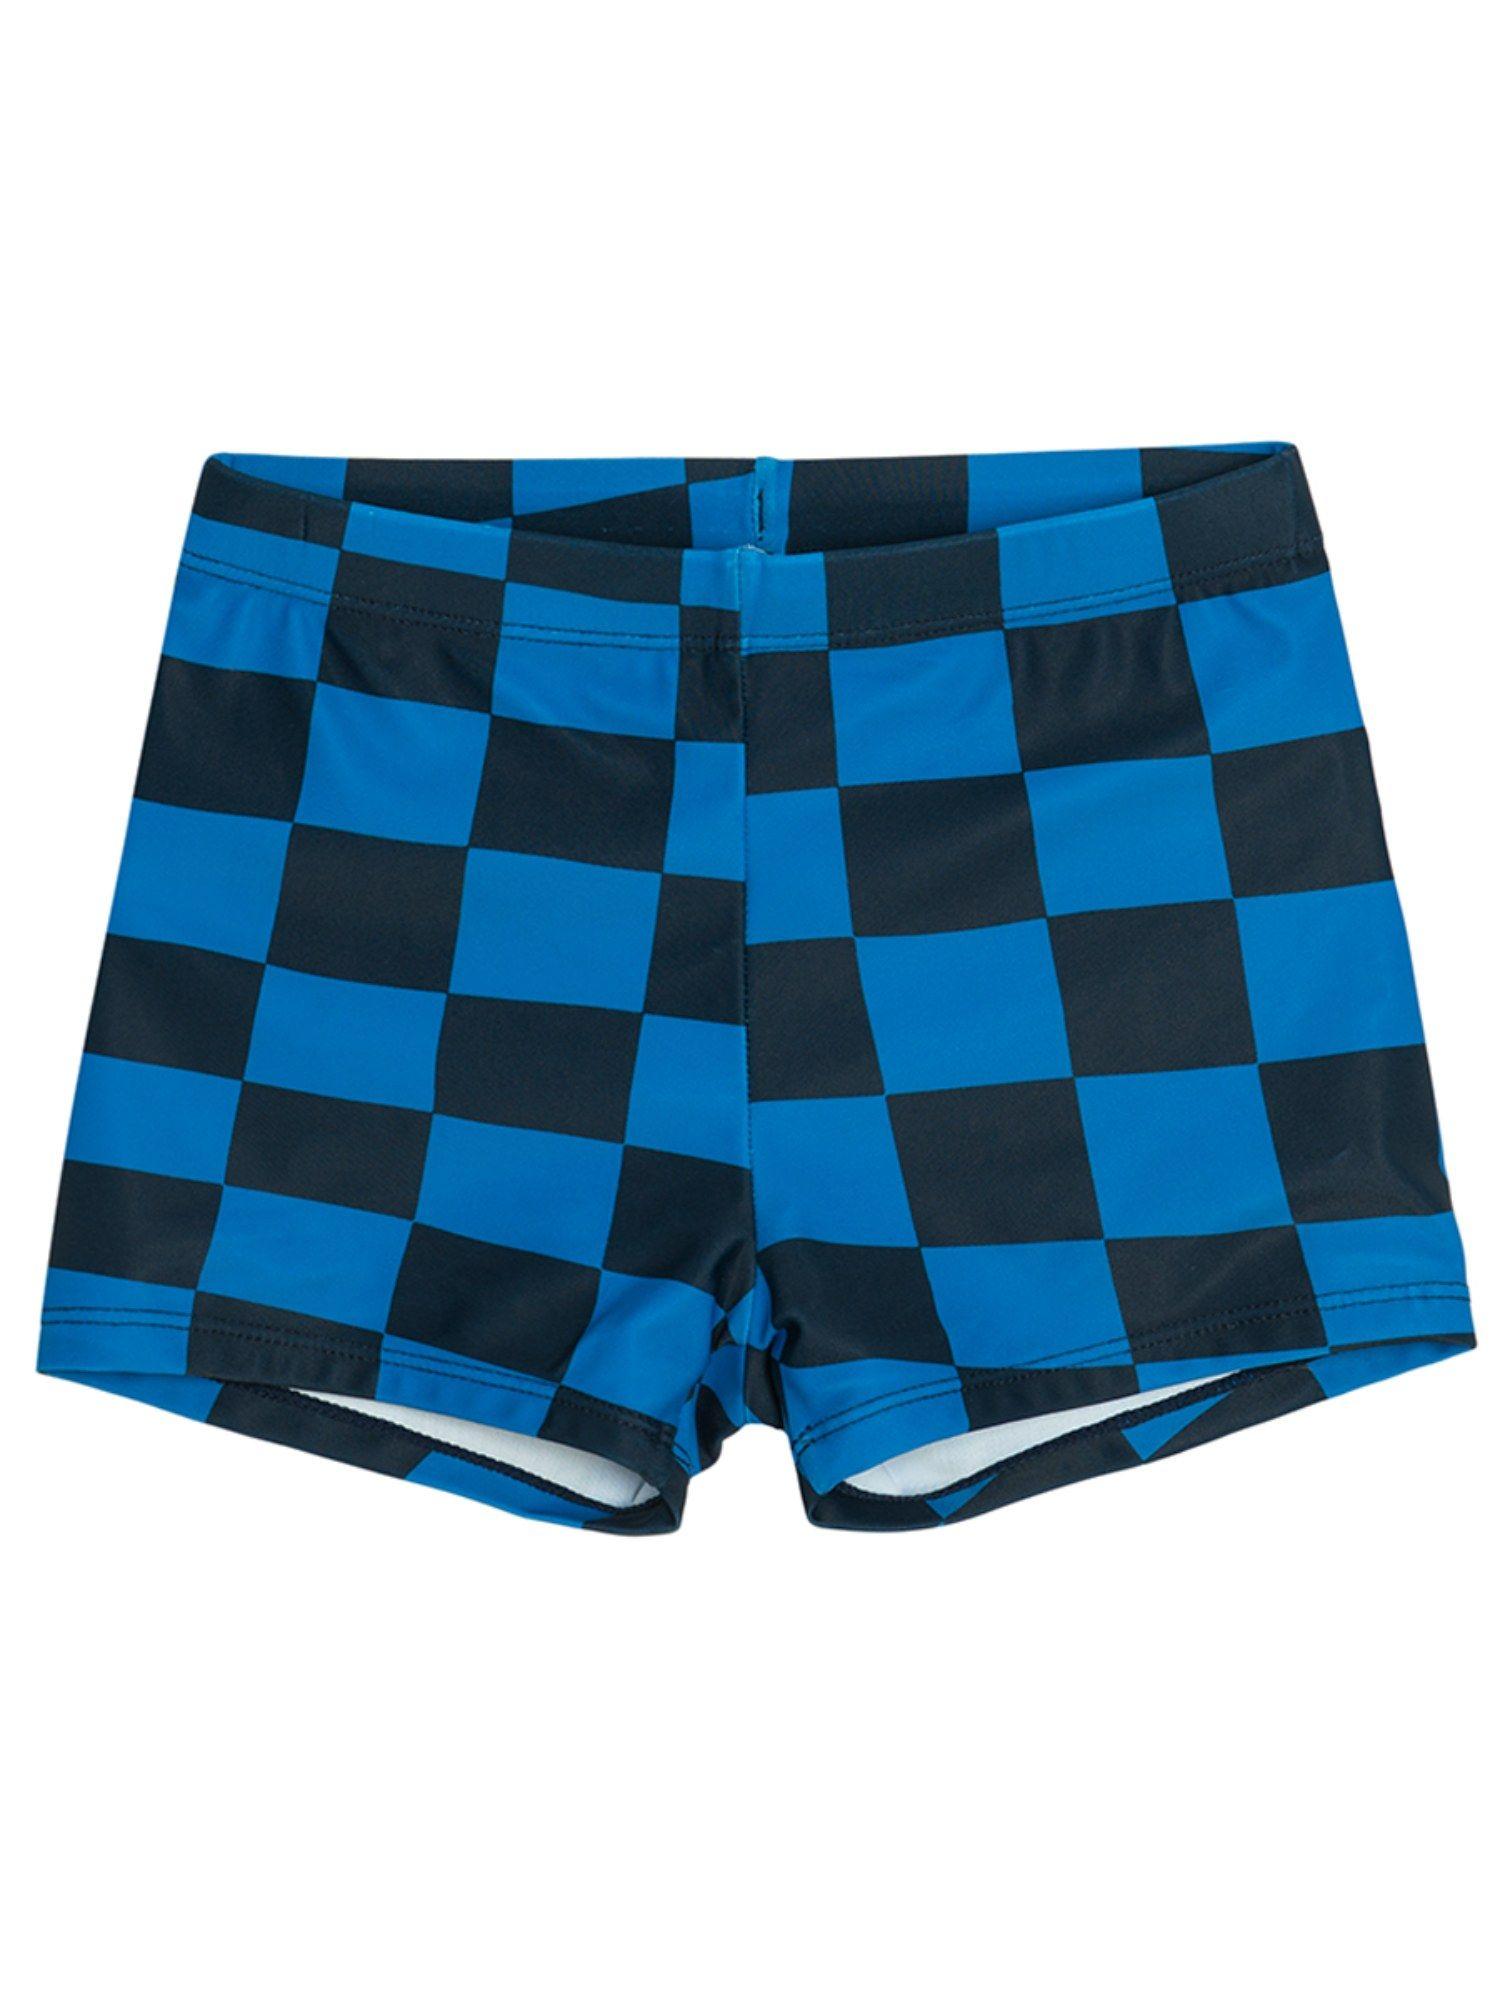 smyk boys navy blue checks swimwear shorts